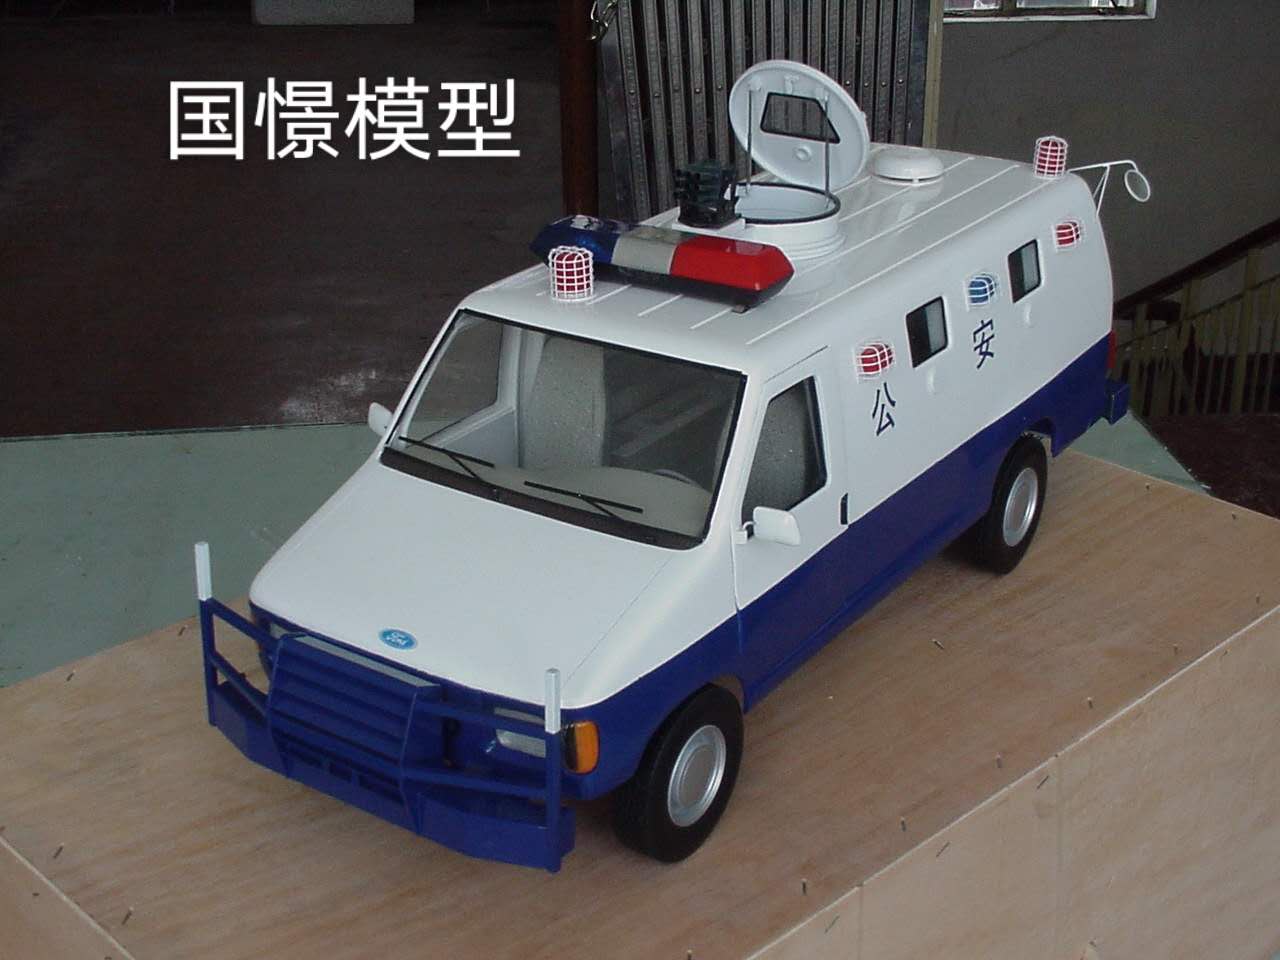 仙桃市车辆模型